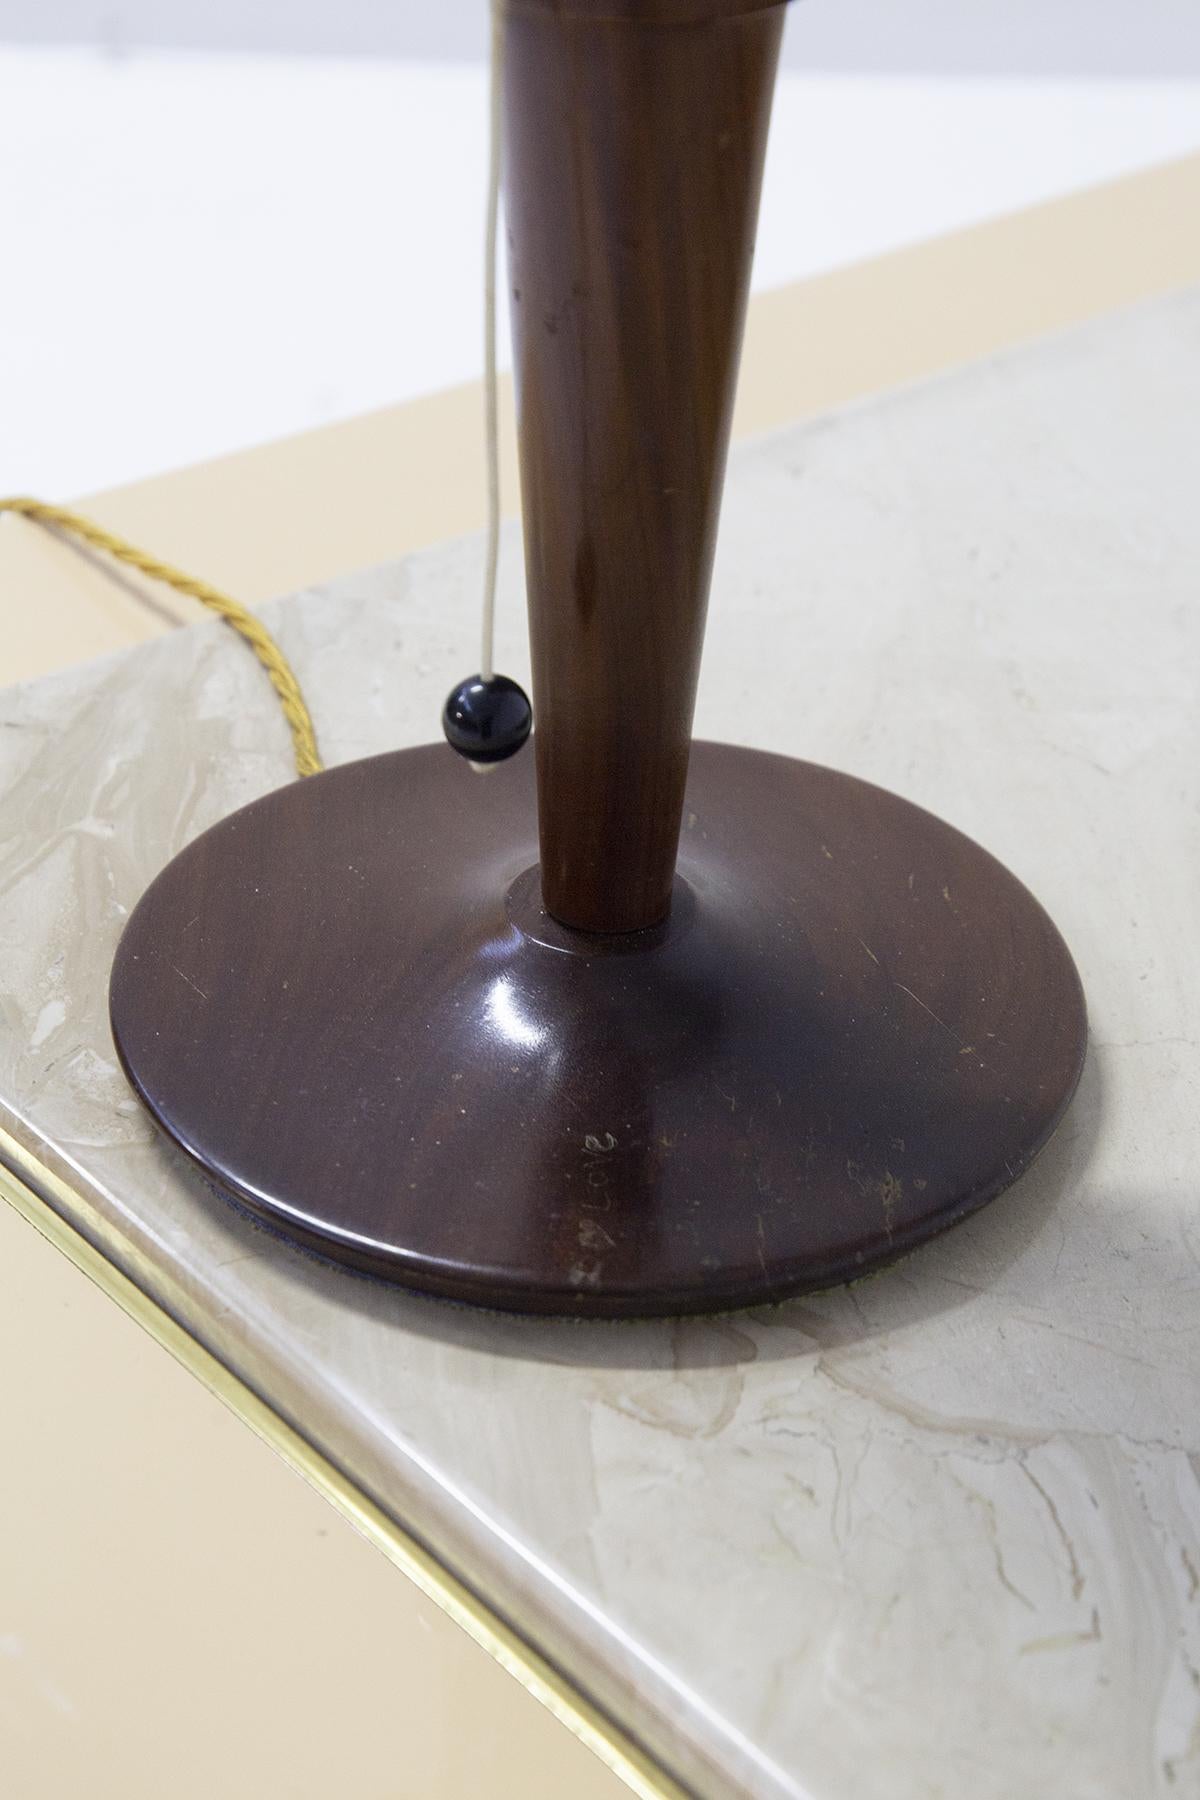 Jolie lampe de table italienne avec cadre en bois produite par une manufacture italienne dans les années 1950.
La lampe est belle et très unique : elle présente une structure à la base ronde avec une tige centrale en bois foncé, très délicate et